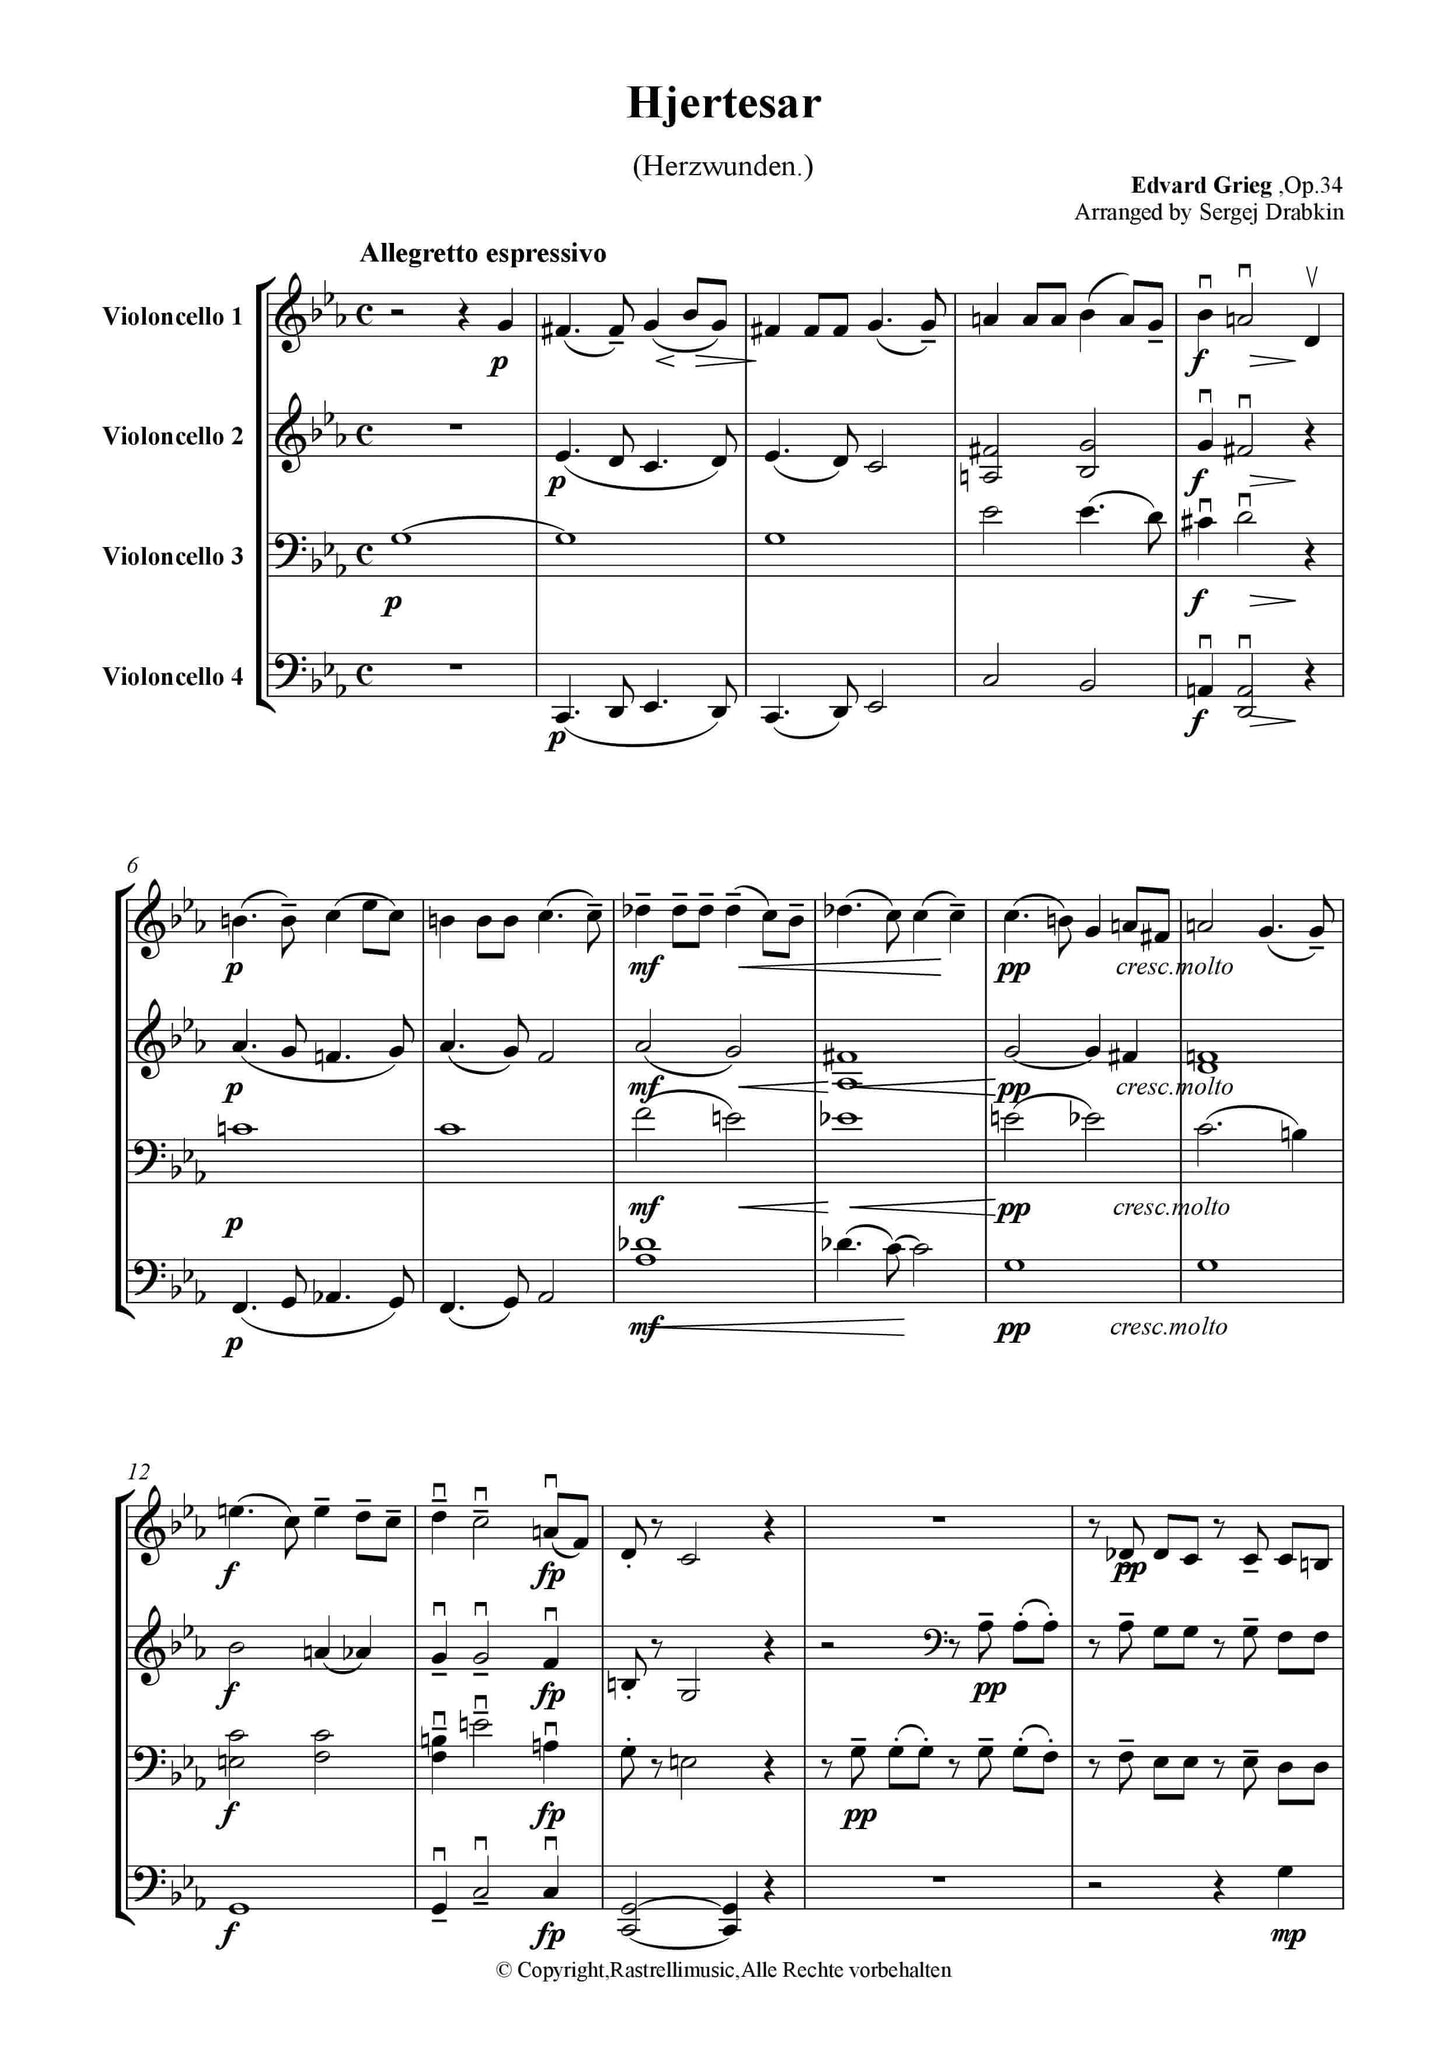 Grieg, Edvard - Herzwunden Op.34